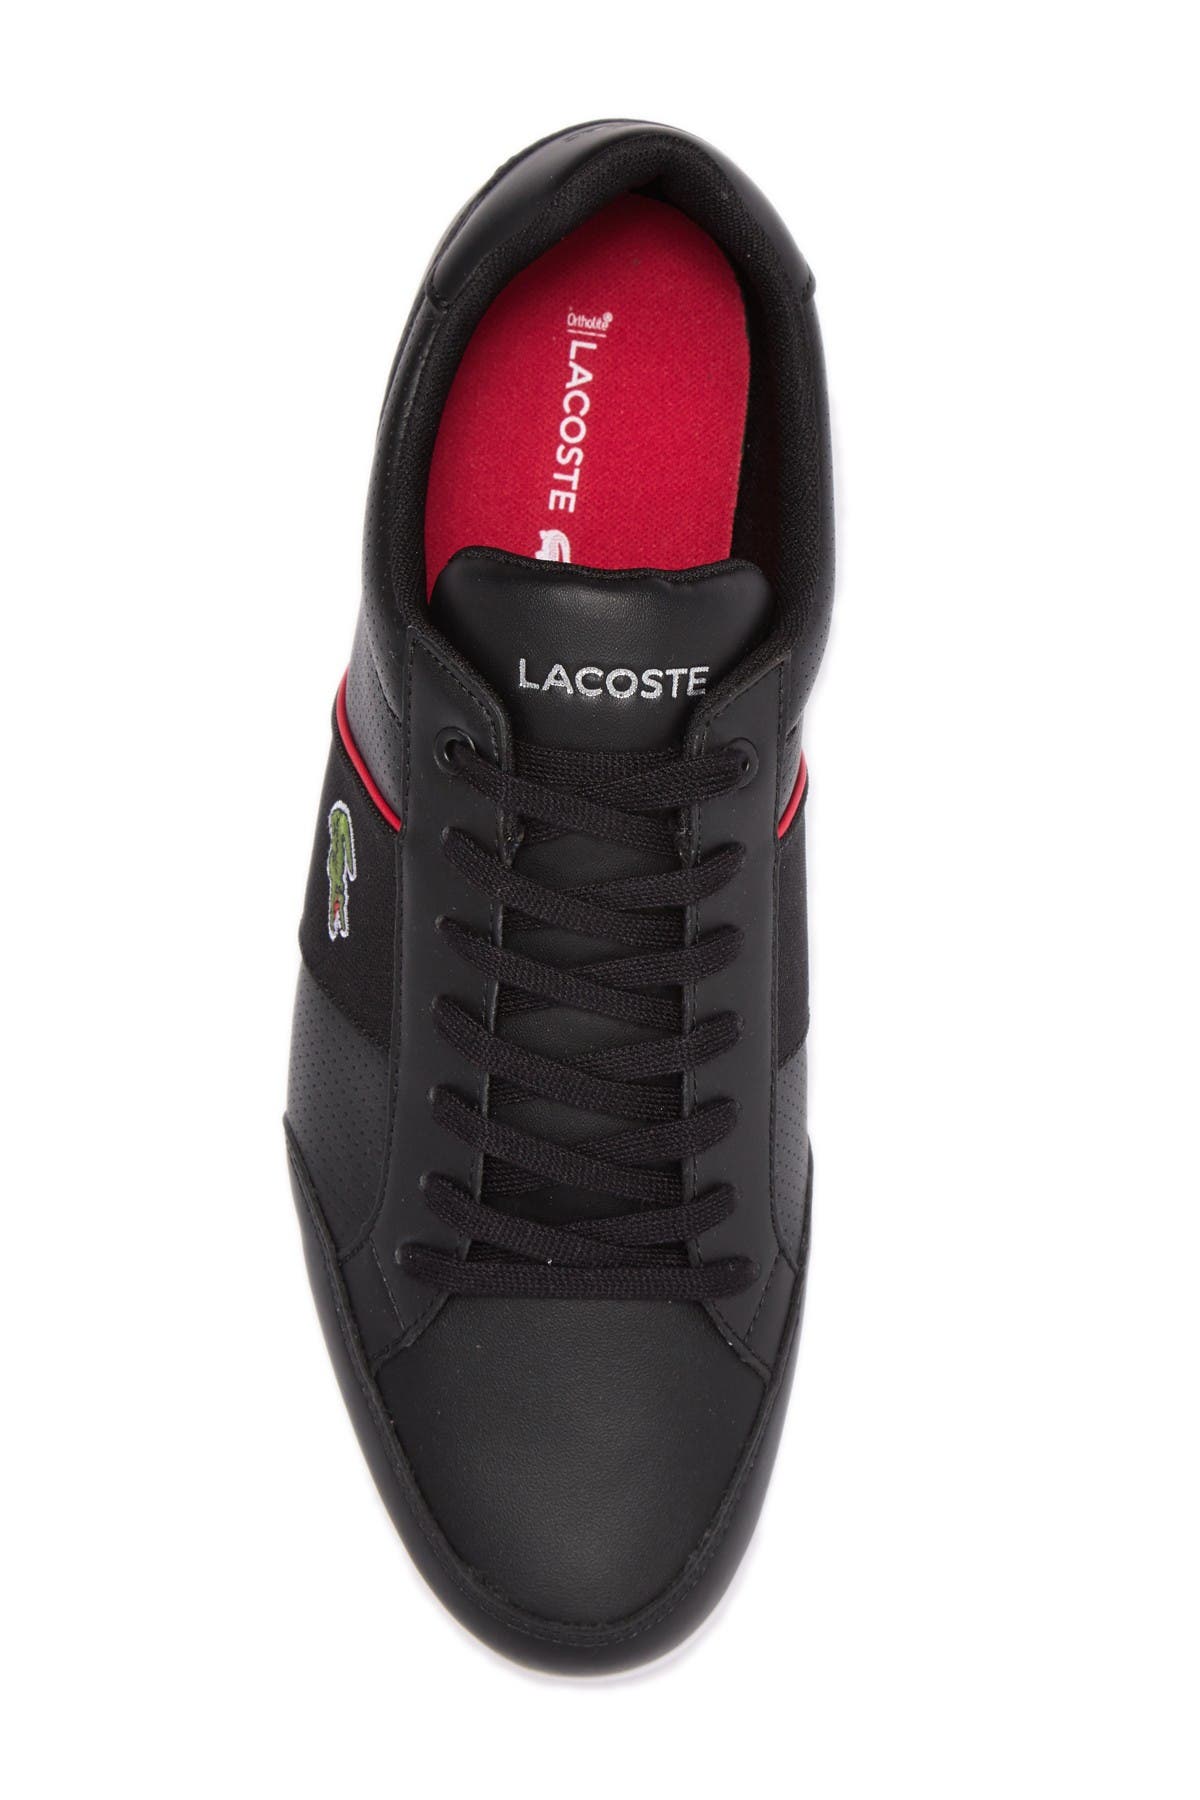 lacoste nivolor leather sneaker